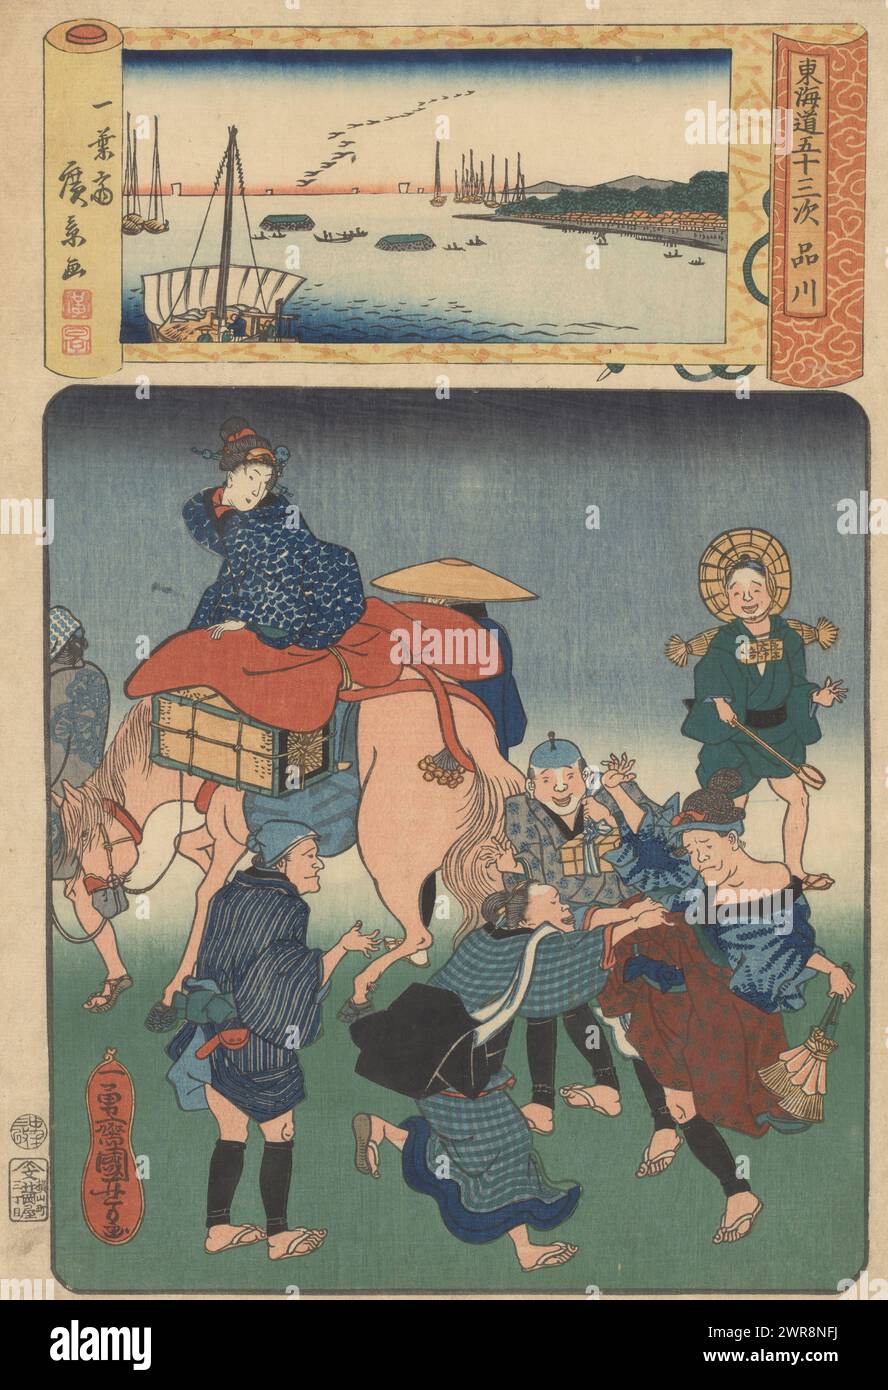 La stazione di Shinagawa (titolo sull'oggetto), le cinquantatré stazioni della strada di Tokaido (titolo della serie sull'oggetto), Una donna, seduta in alto su un cavallo, guarda indietro ai viaggiatori a piedi che vengono molestati da una signora di facile virtù . Con grande allegria, la donna tira giù il kimono di un viaggiatore. Nel cartiglio in cima una vista mare con barche (Shinagawa)., stampatore: Utagawa Kuniyoshi, editore: Tsujiokaya Bunsuke, Giappone, Mar-1860, carta, xilografia a colori, altezza 370 mm x larghezza 250 mm, stampa Foto Stock